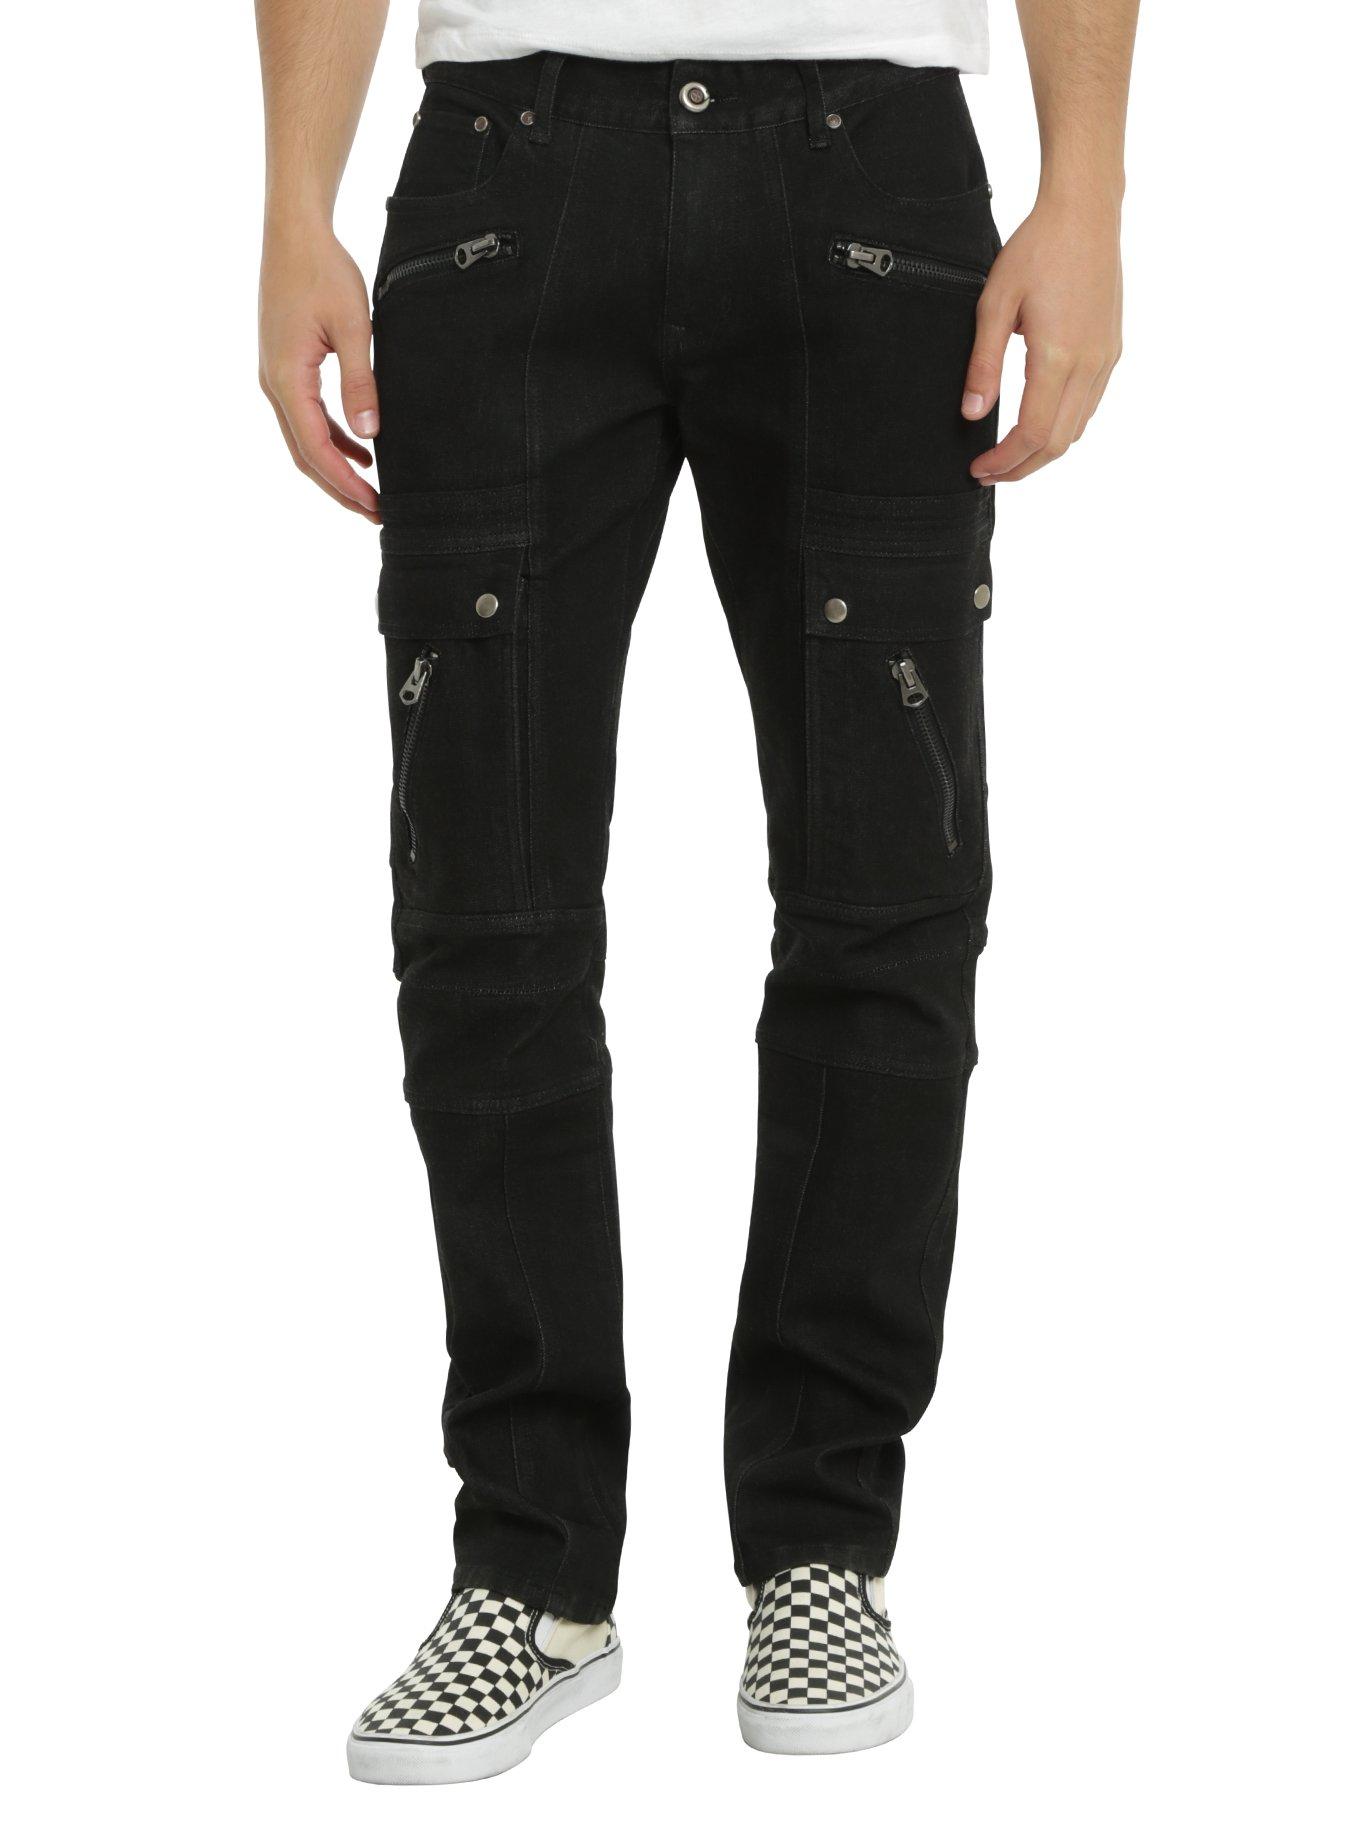 BlacX Black Moto Skinny Jeans, BLACK, hi-res